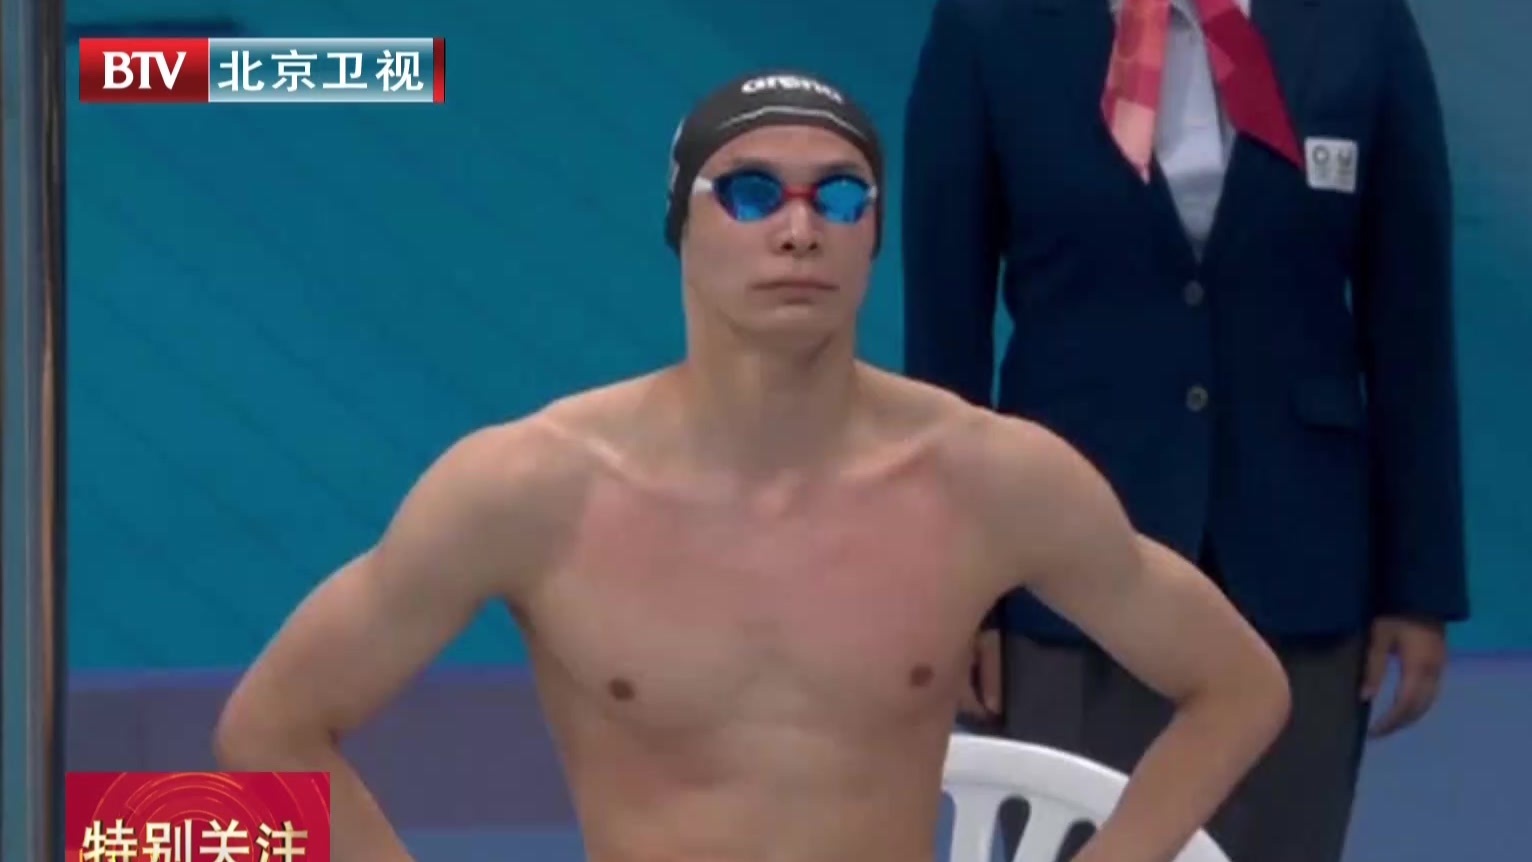 俄罗斯奥委会驳斥美国游泳选手兴奋剂指控